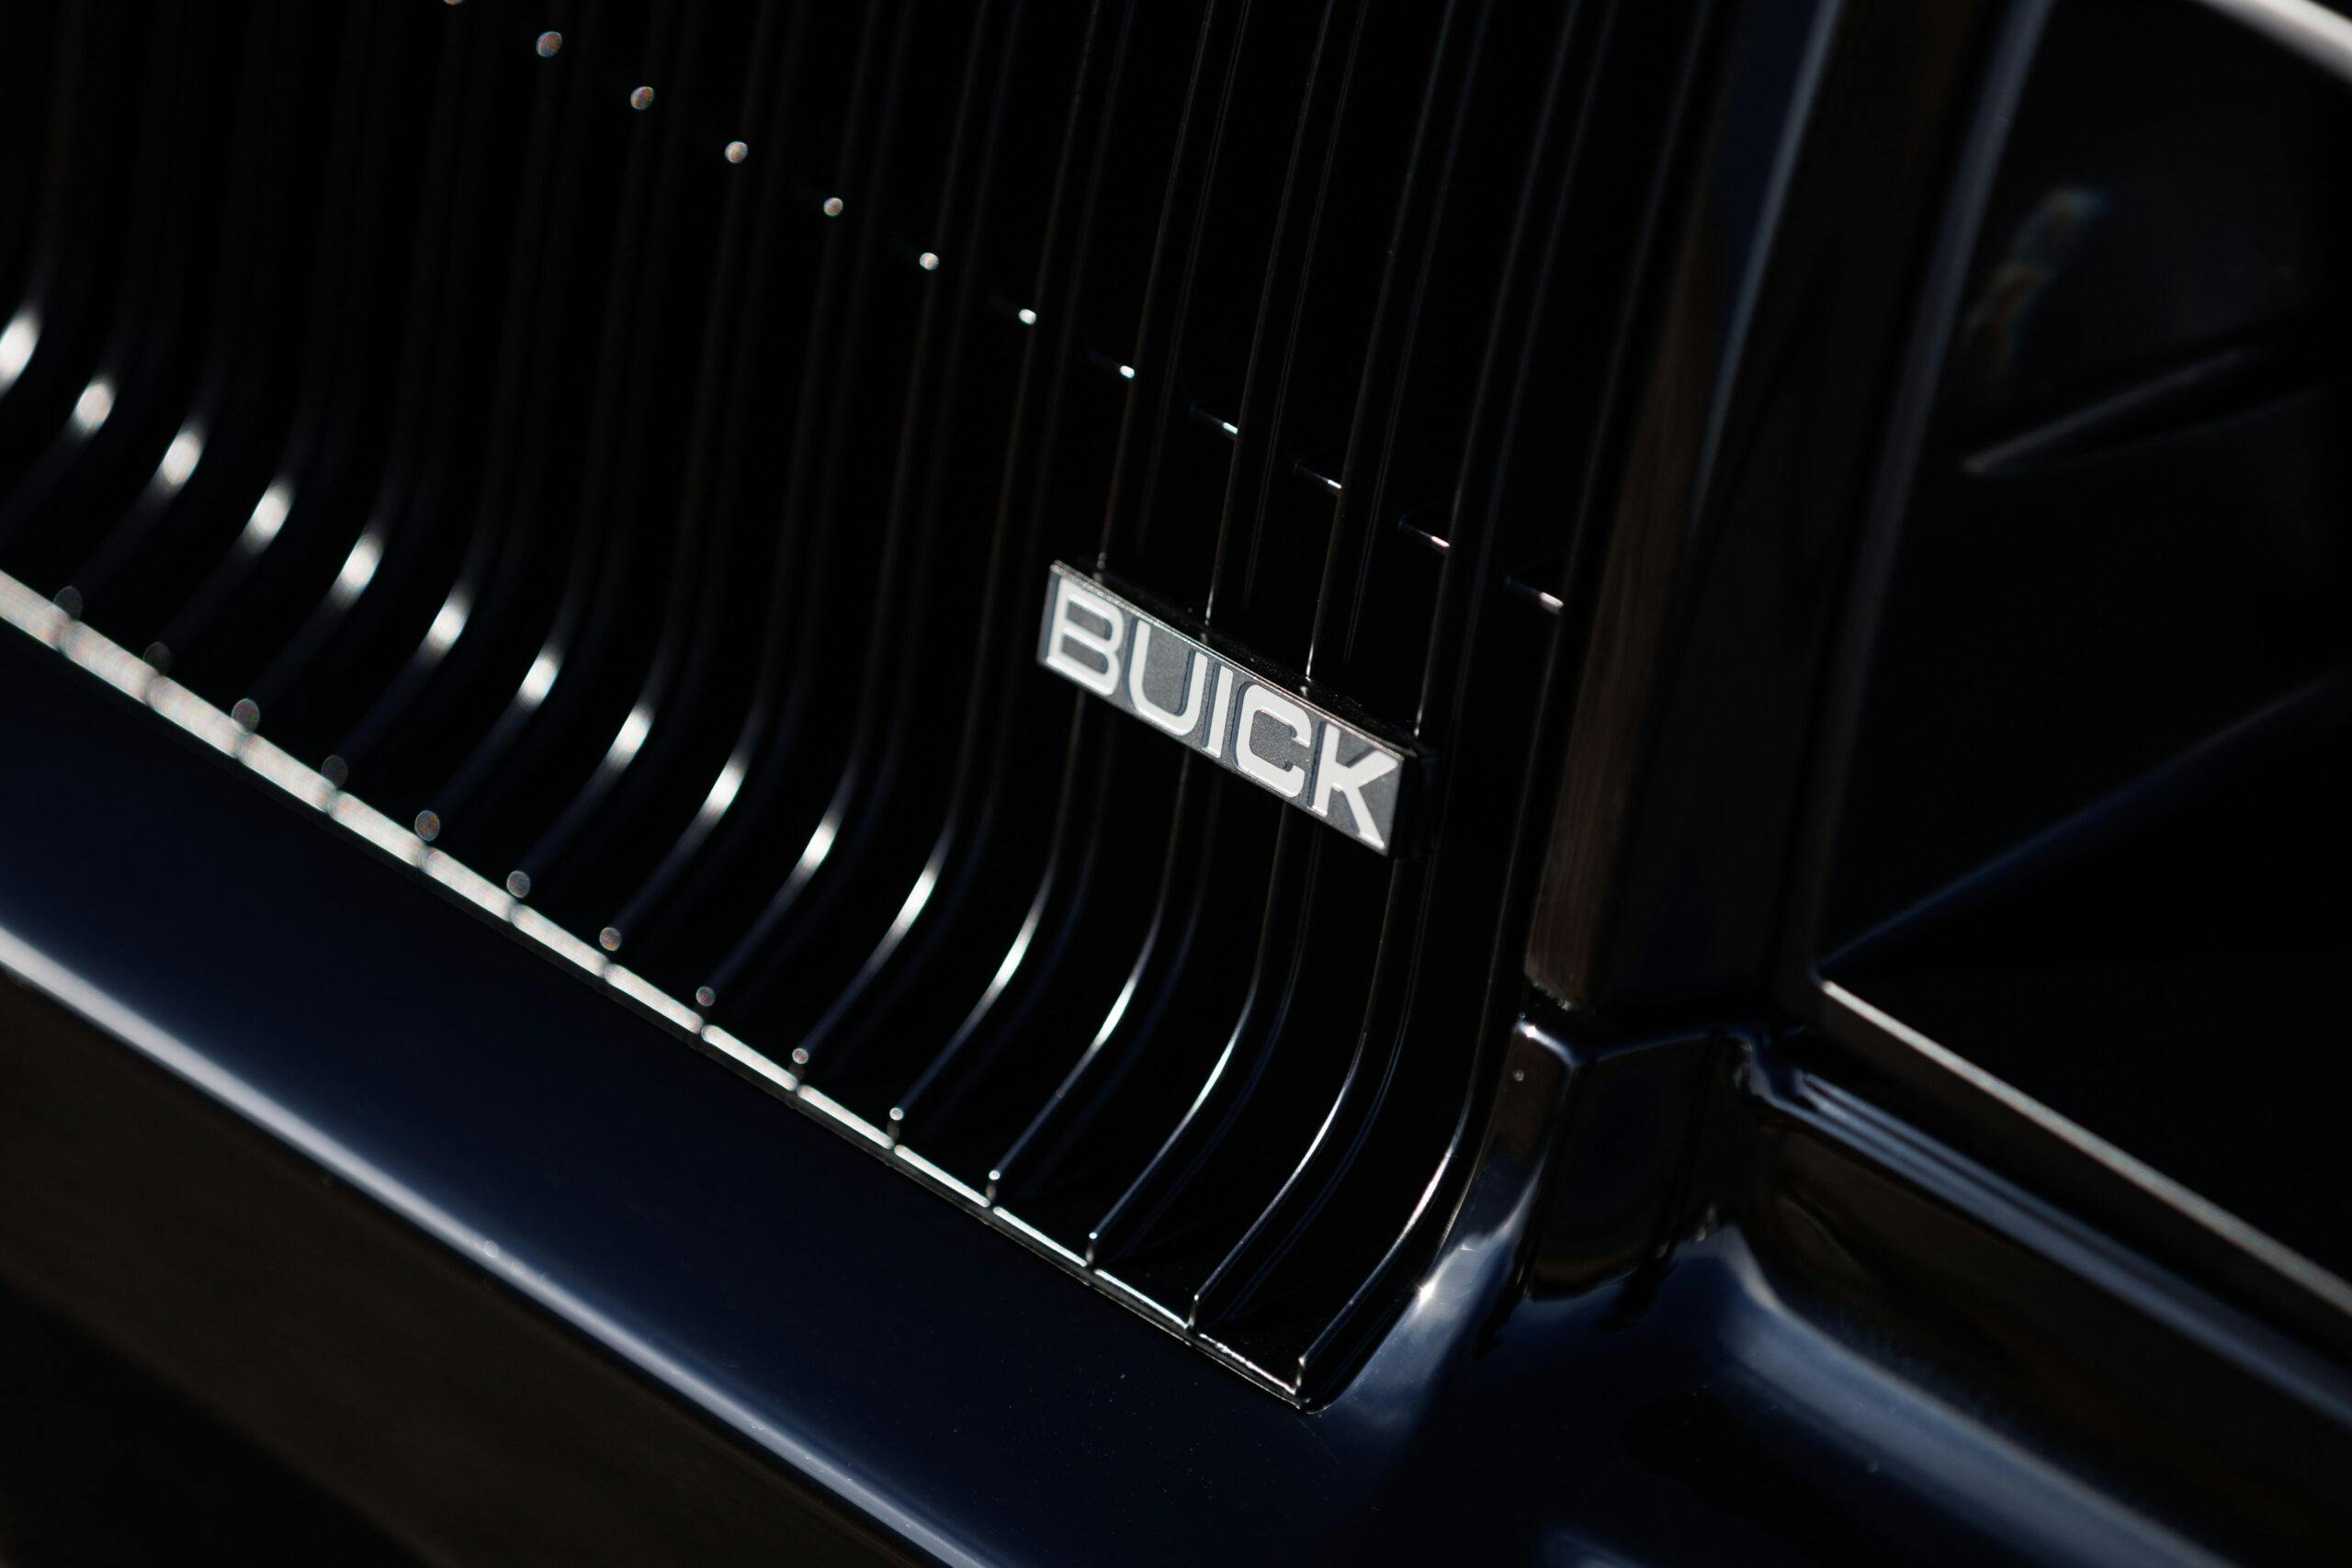 Kevin Hart Buick Grand National restomod grille emblem detail